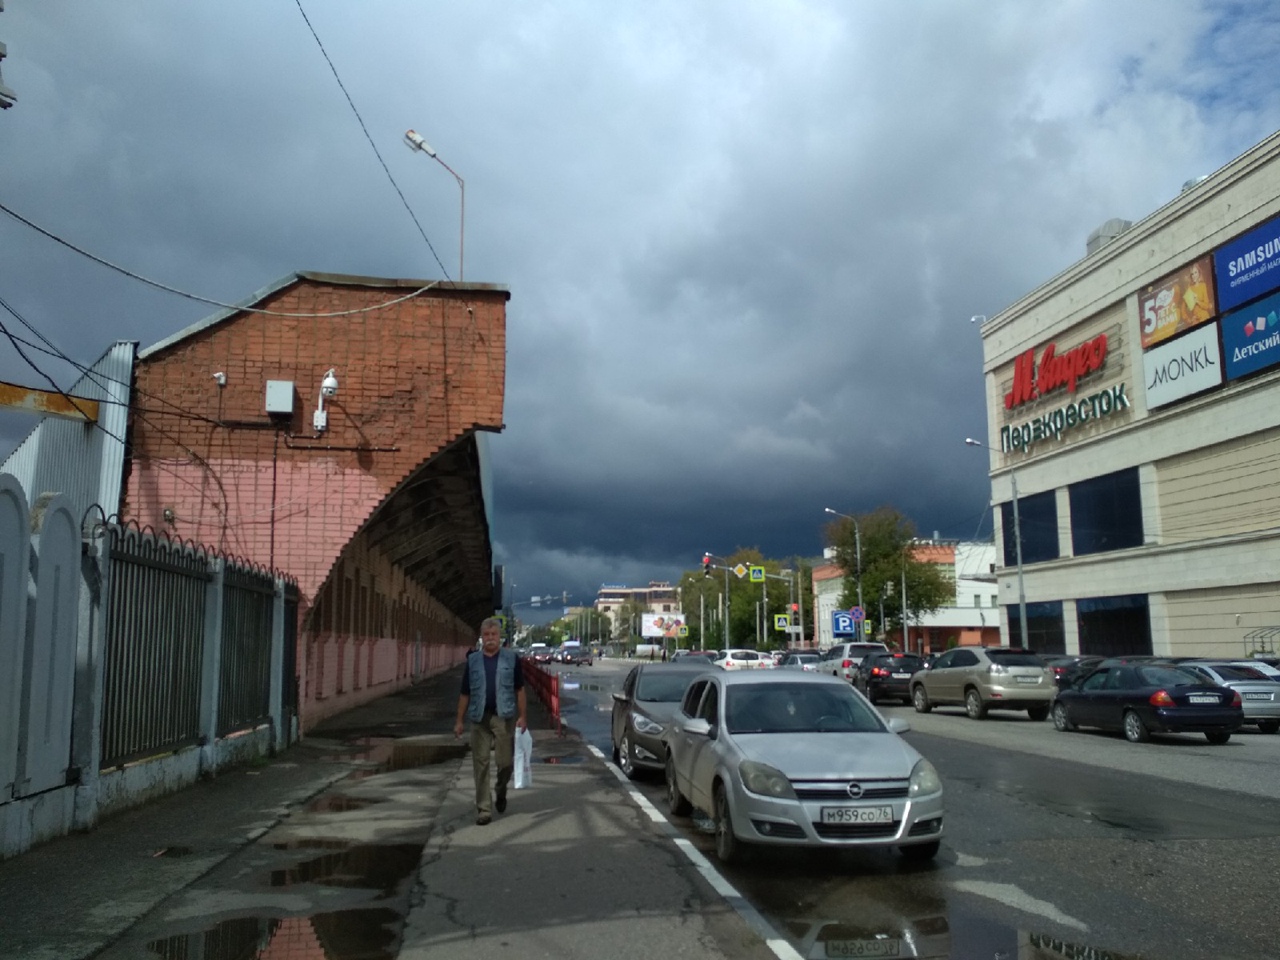  Министерство безопасности предупредило об ухудшении погоды в Ярославле  